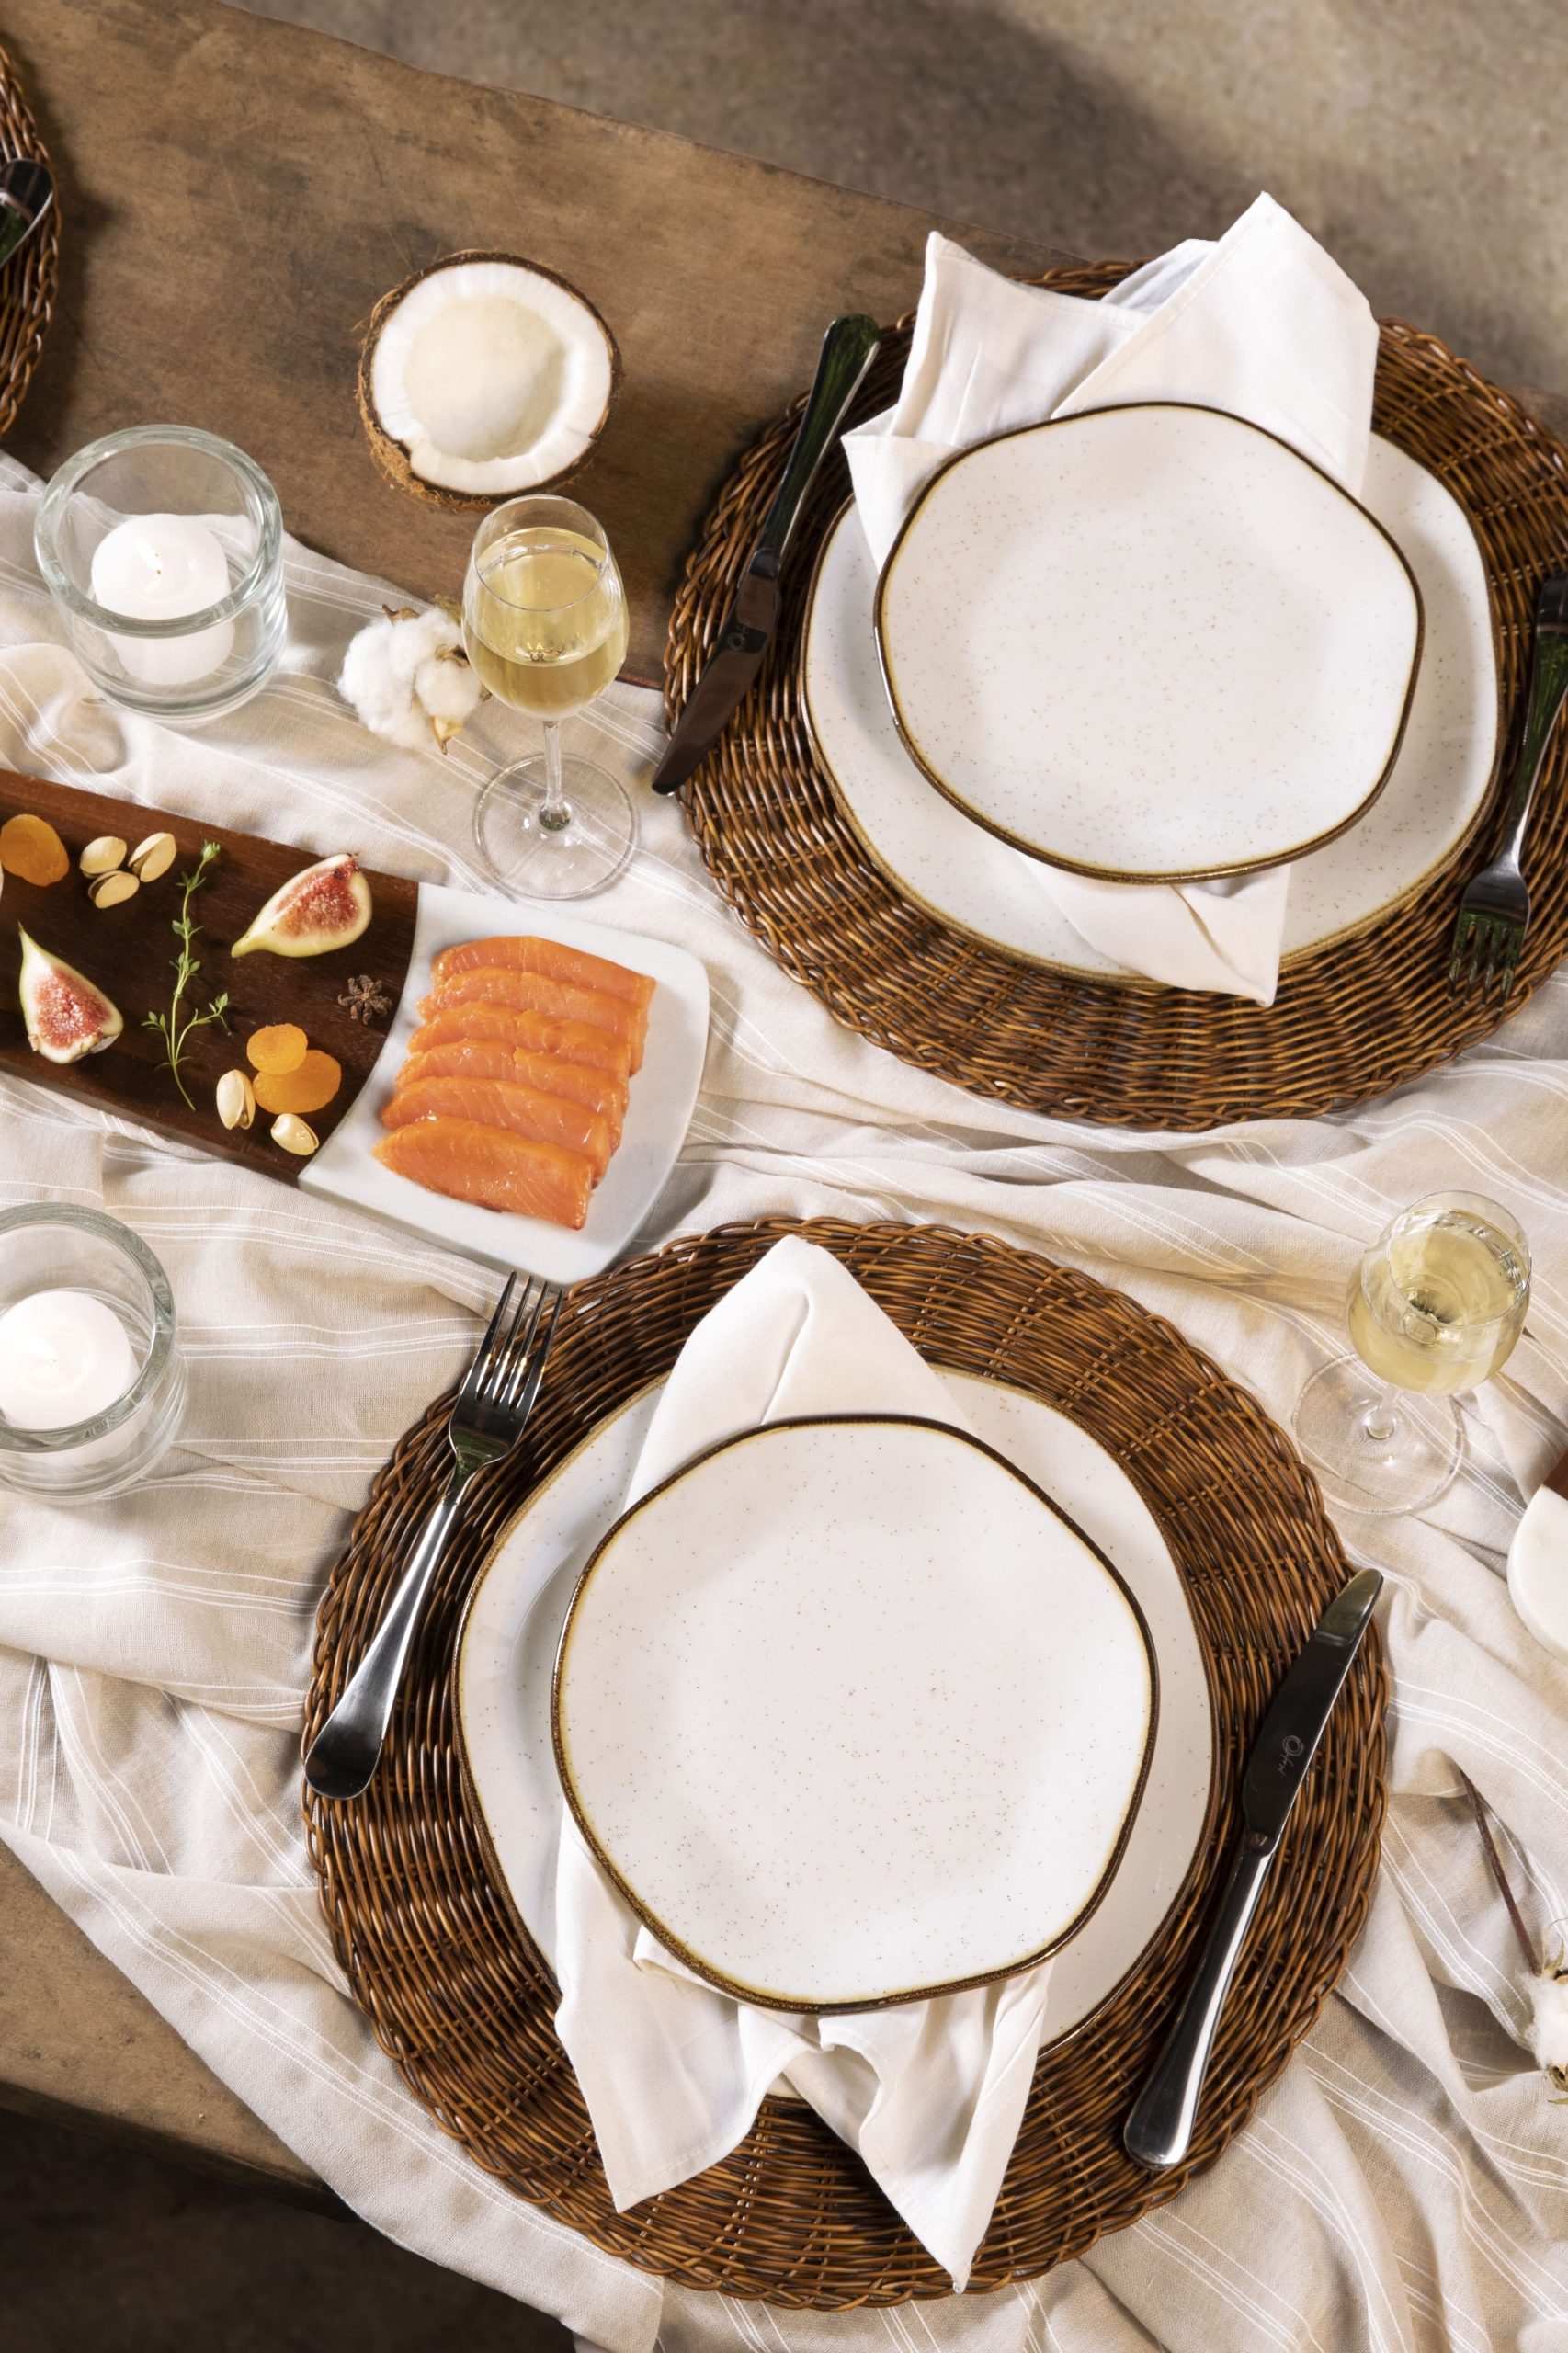 Visão parcial de uma mesa posta na praia. Sobre o tampo de madeira, vemos pratos brancos, com filete marrom nas bordas, e formas orgânicas. Há taças de cristal com espumante. No centro da mesa, vemos uma tábua com queijo e frutas, e uma vela acesa dentro de um copinho.